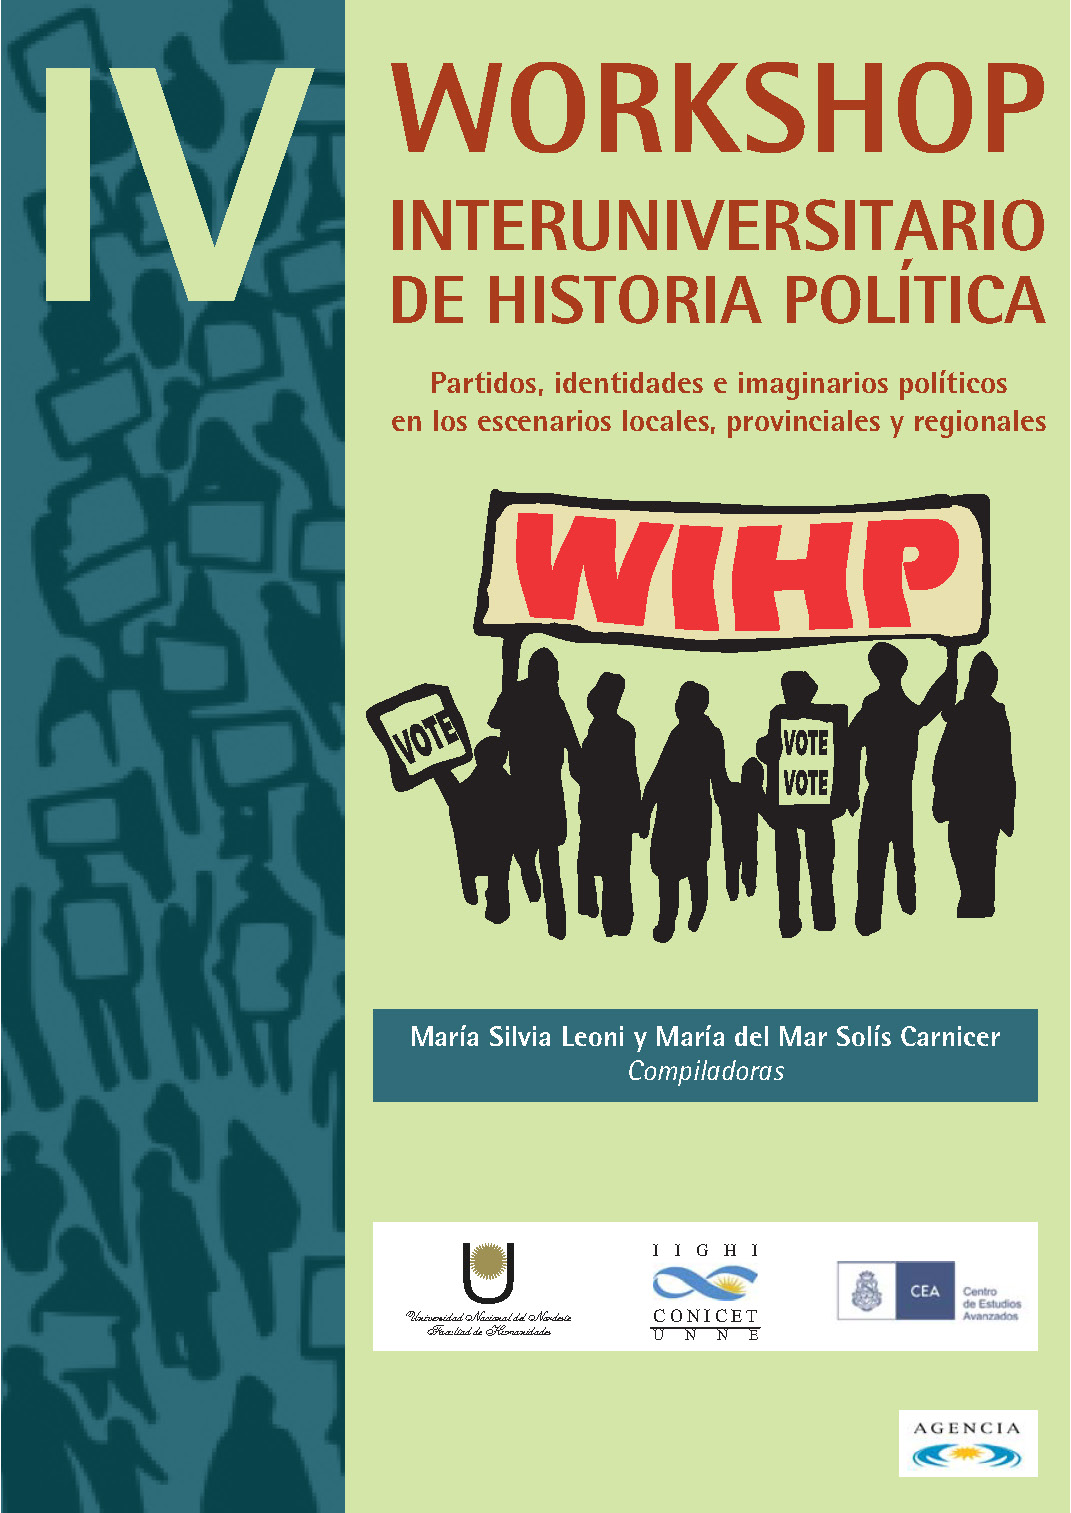 IV Workshop Interuniversitario de Historia Política Partidos, identidades e imaginarios políticos en los escenarios locales, provinciales y regionales